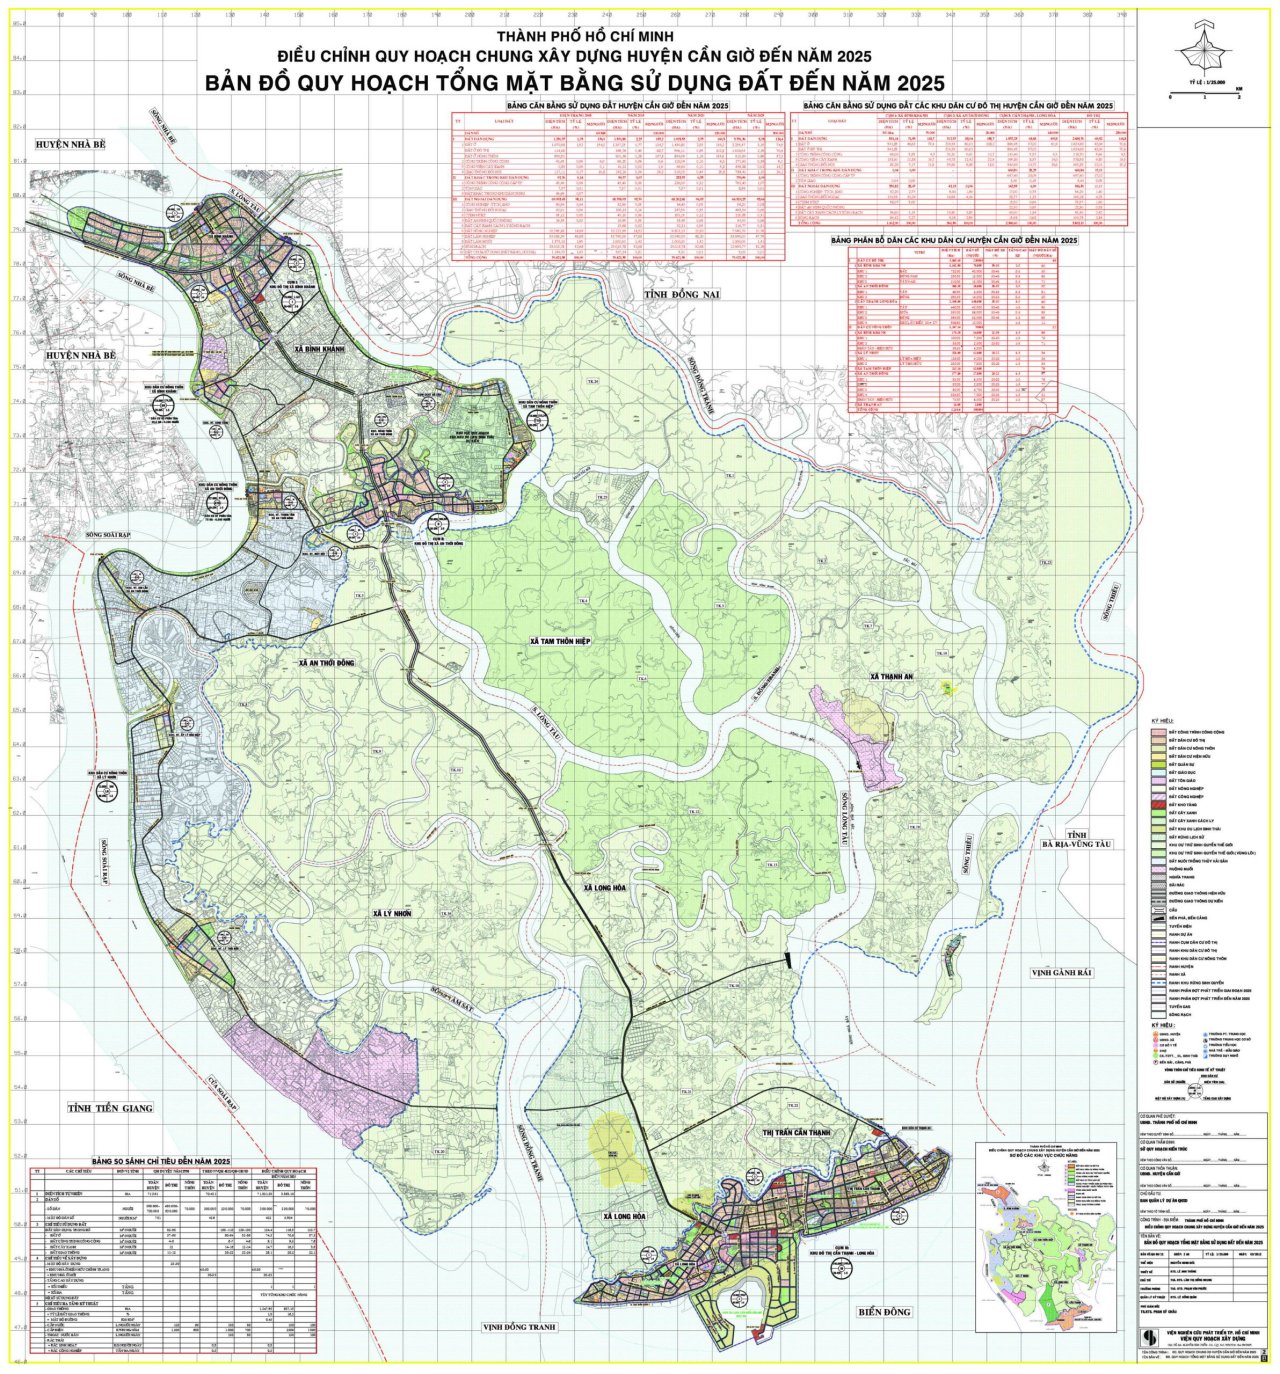 Bản đồ sử dụng đất đến năm 2030 Huyện Cần Giờ, Thành phố.